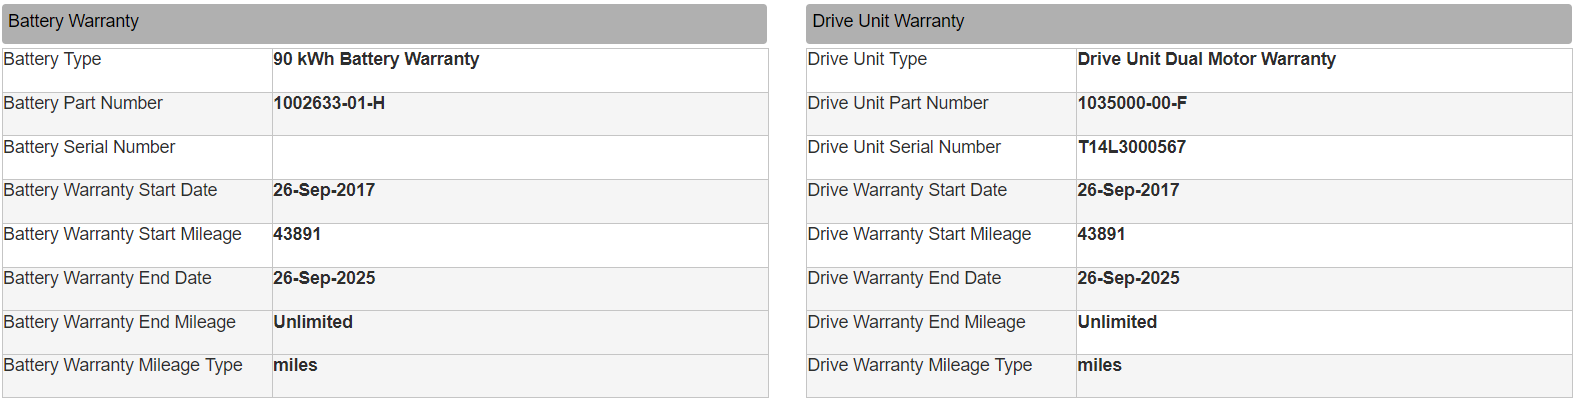 Battery_drivetrain_warranty.png